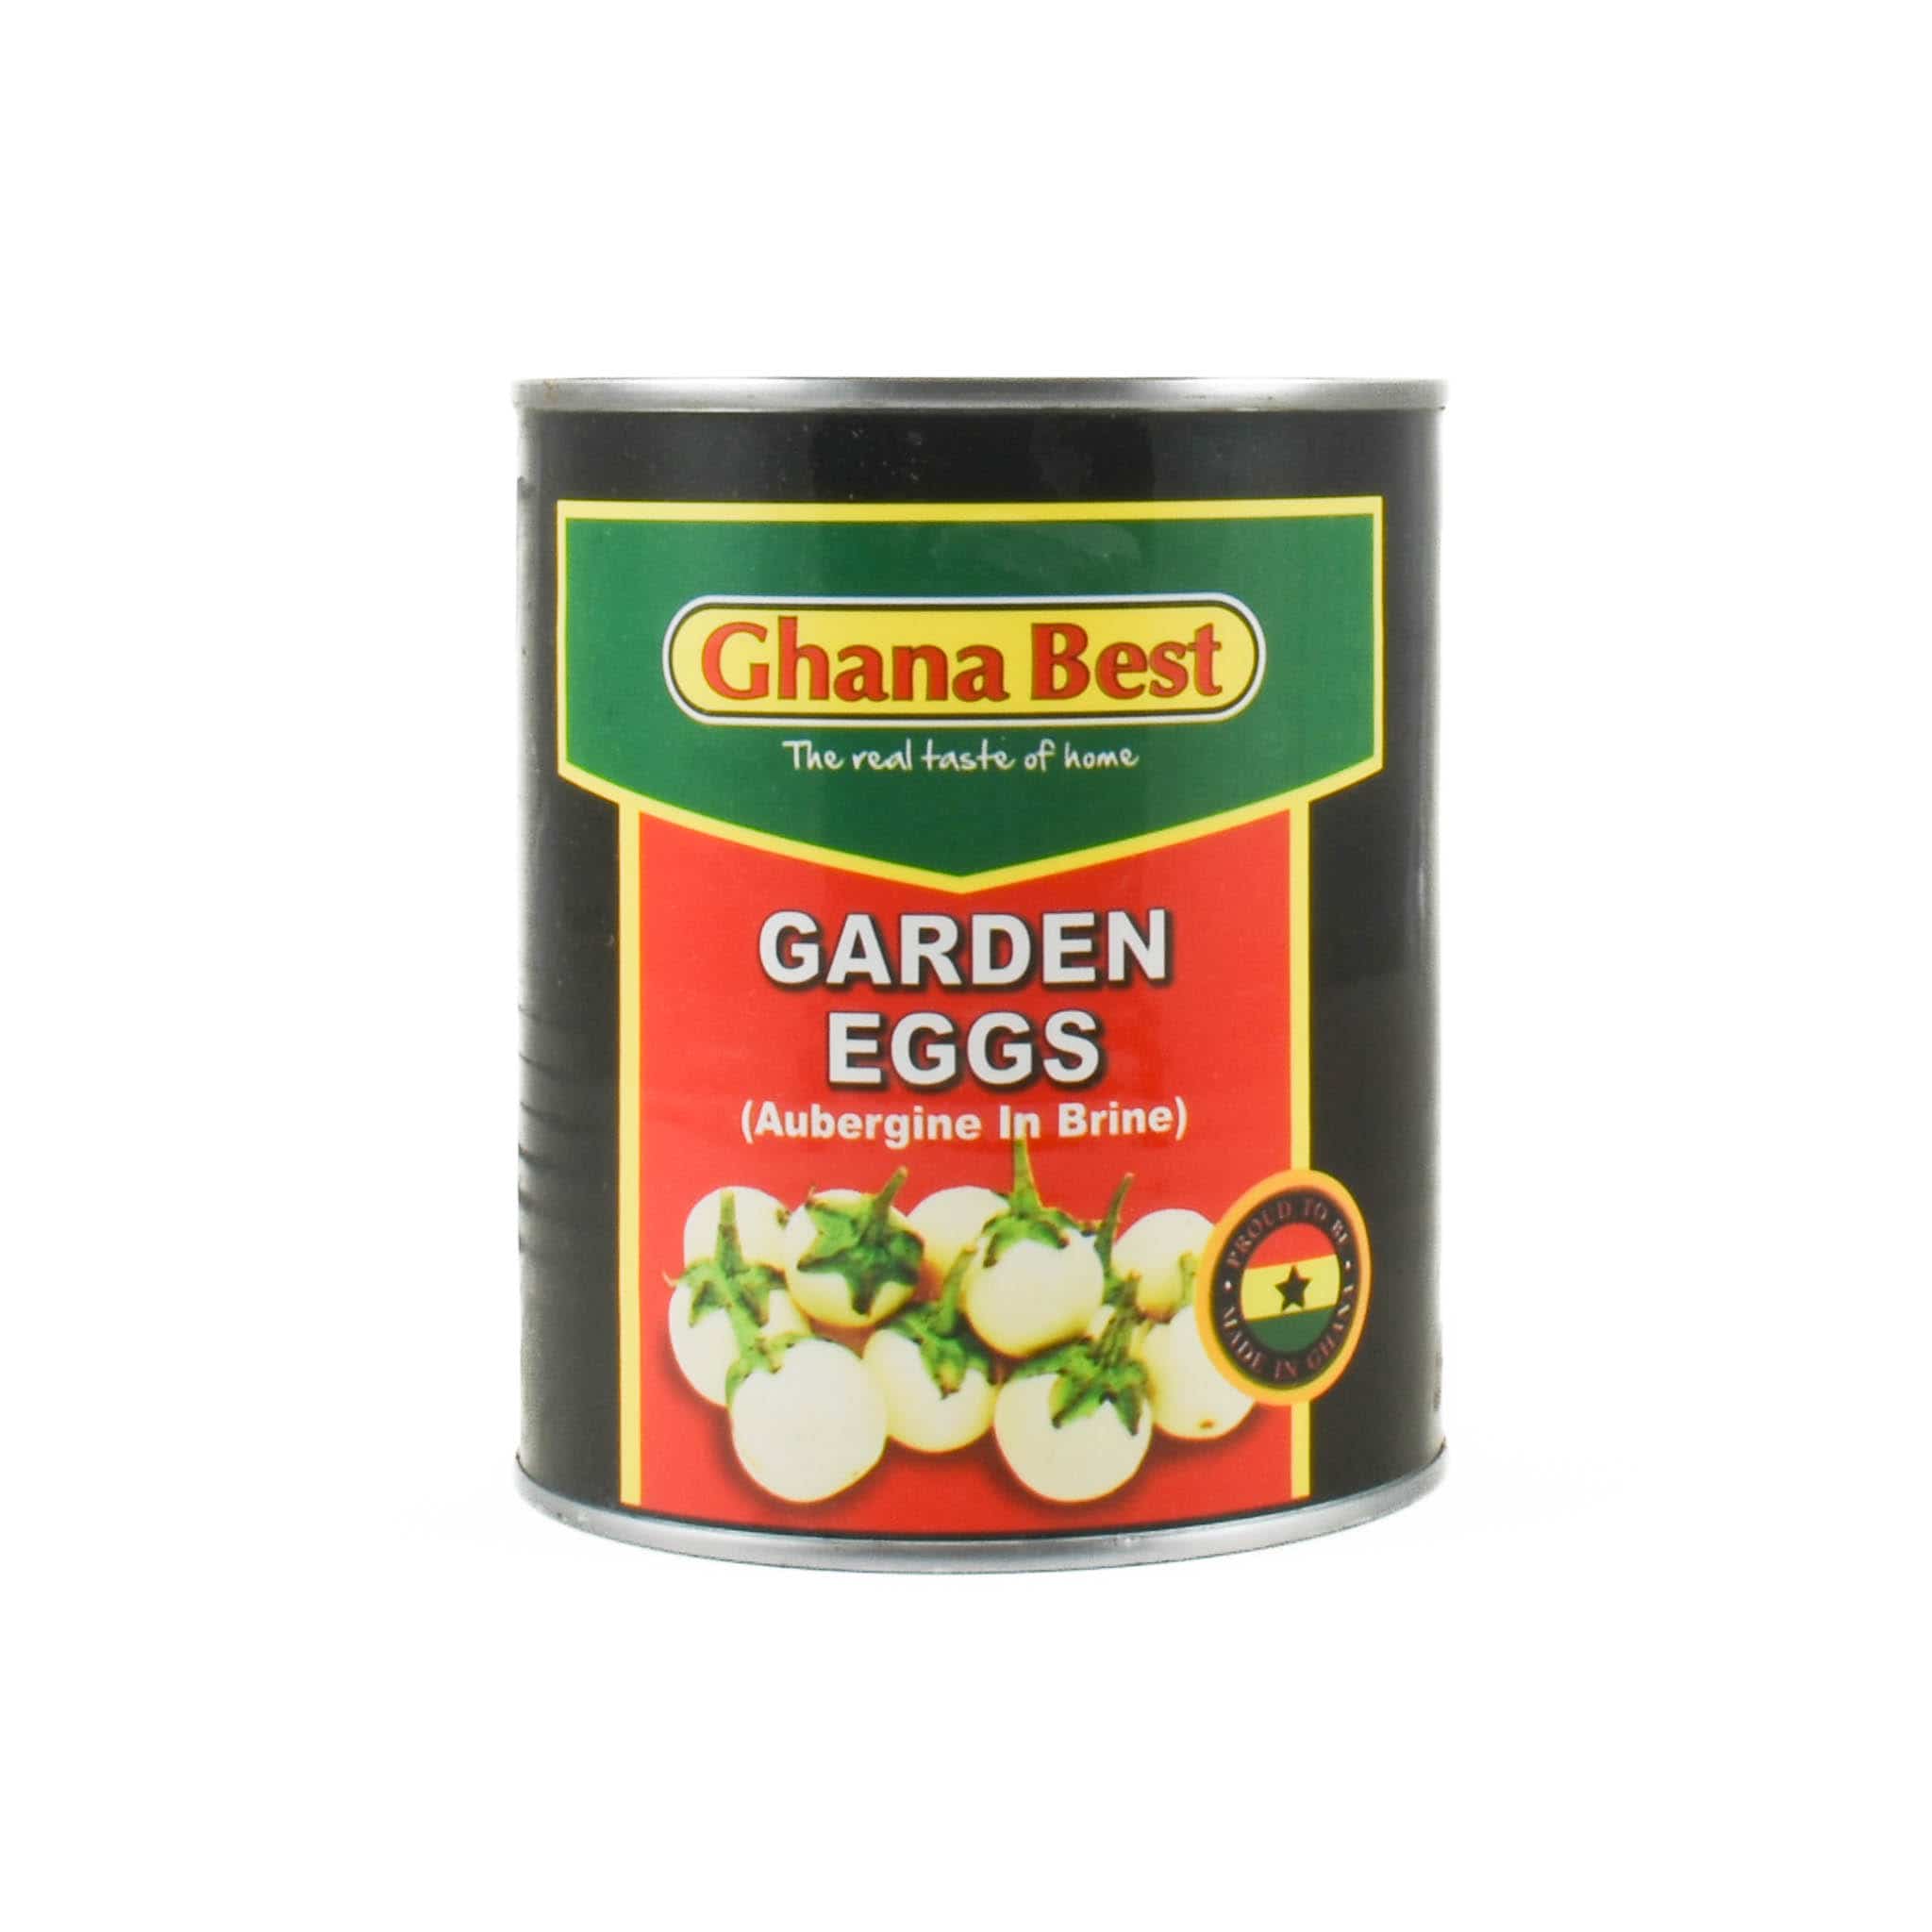 Ghana Best Garden Eggs, 800g